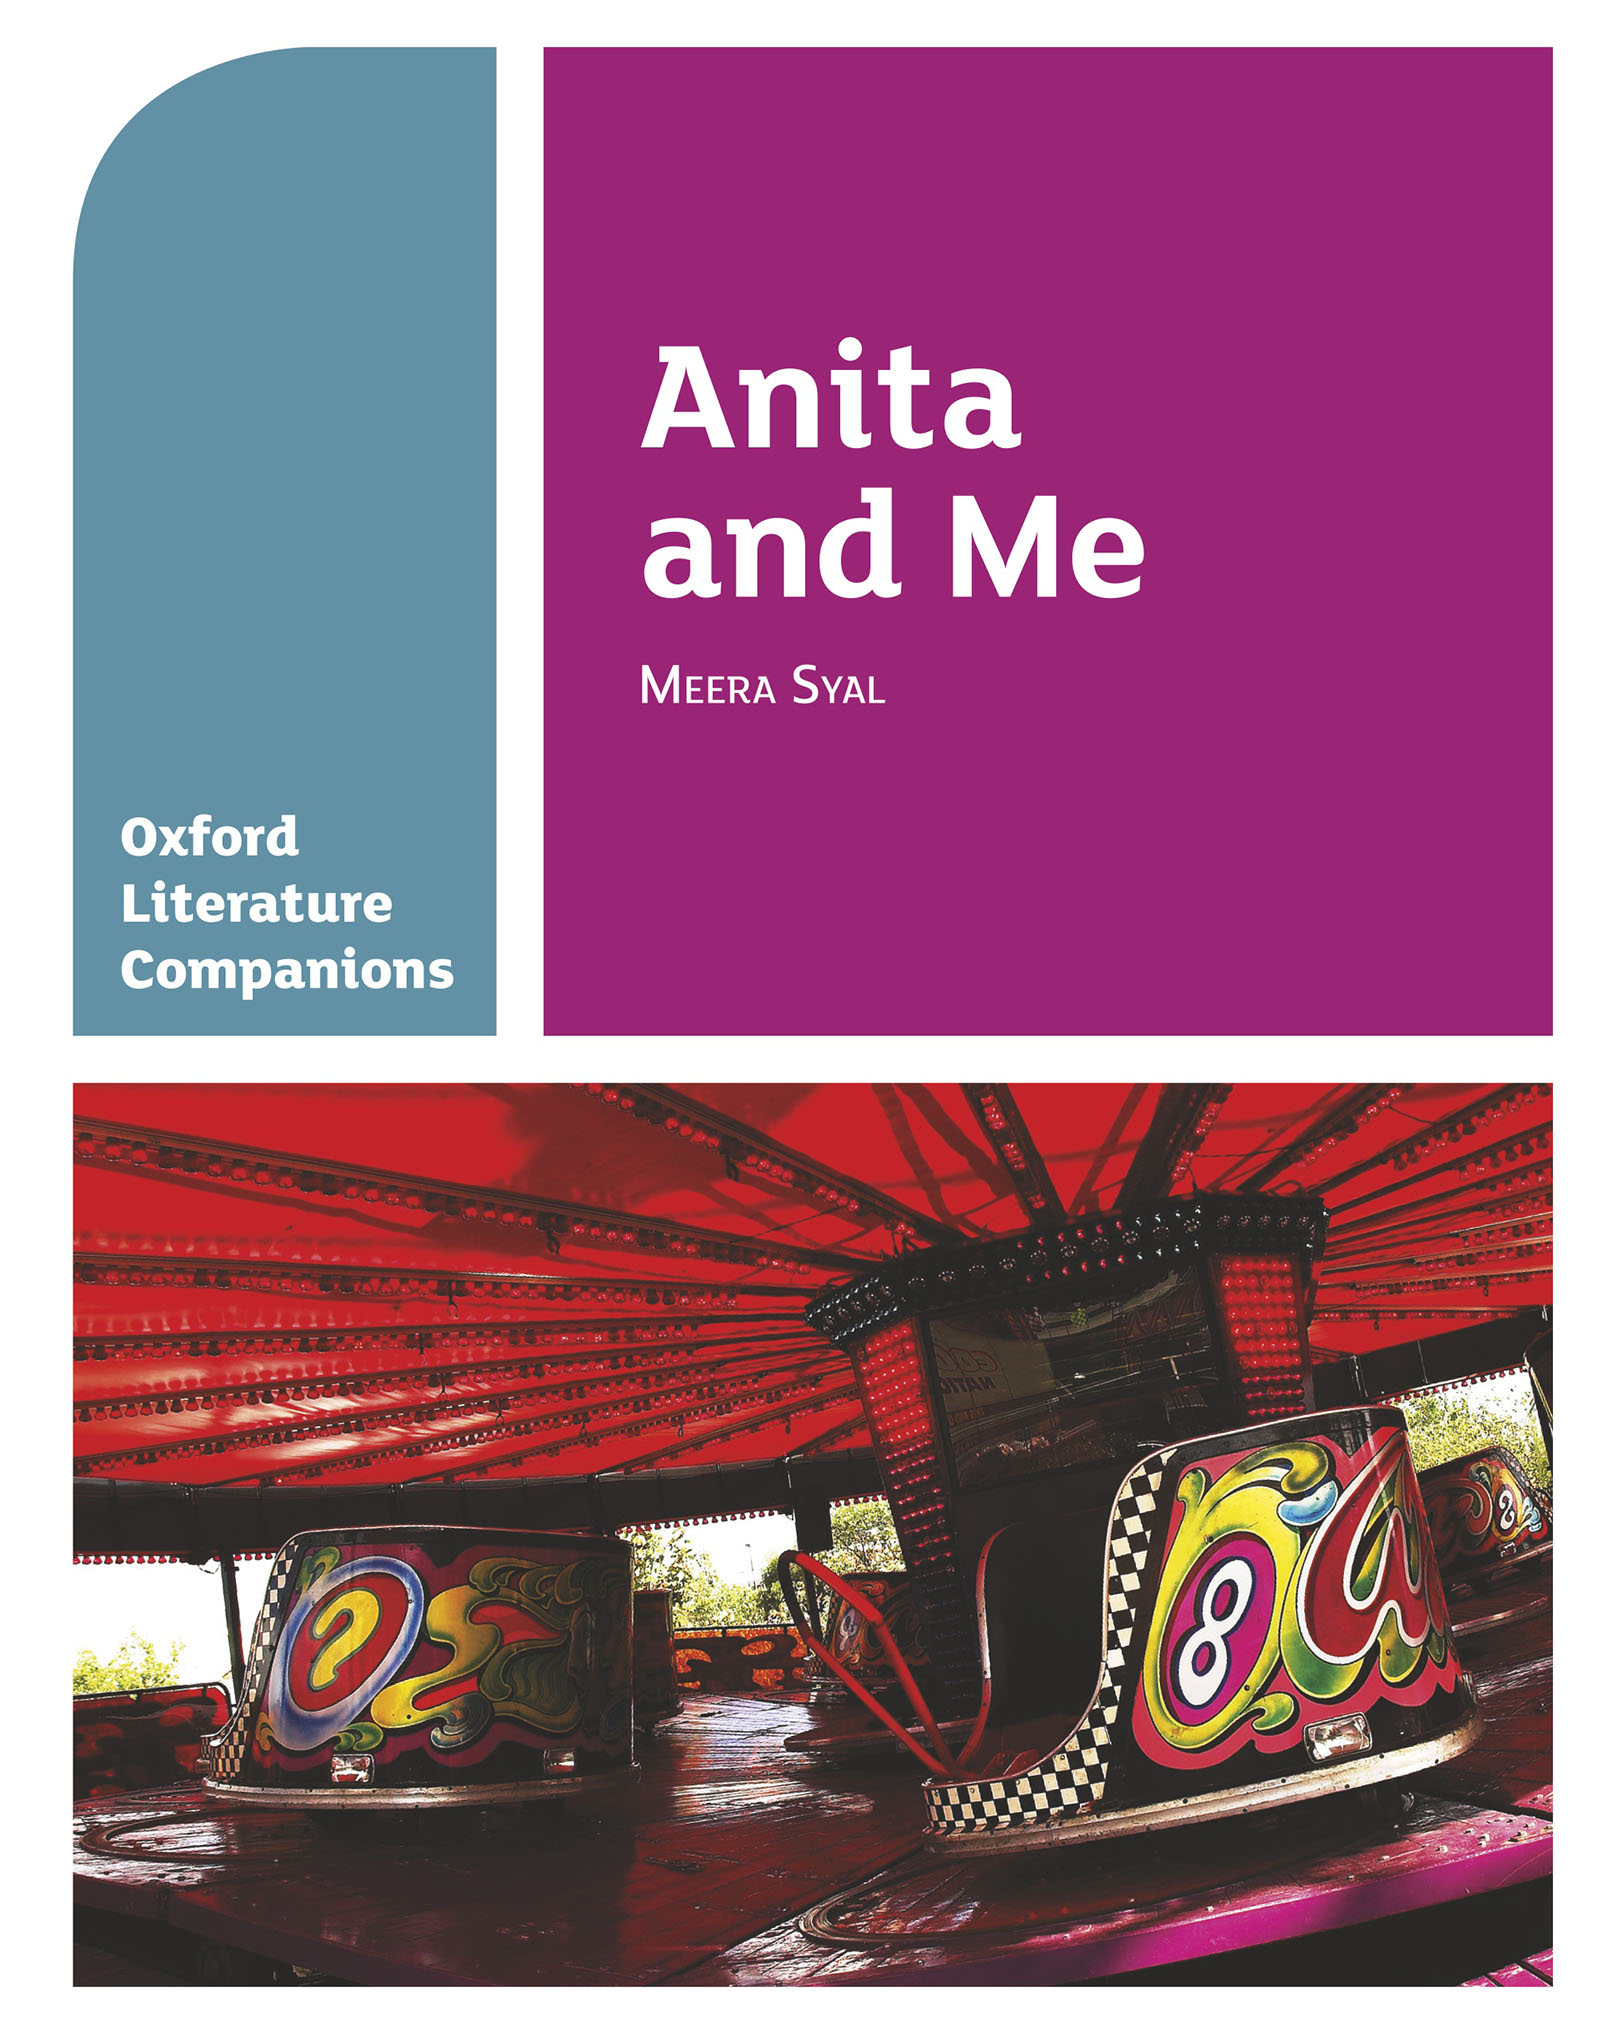 Oxford Literature Companions: Anita and Me